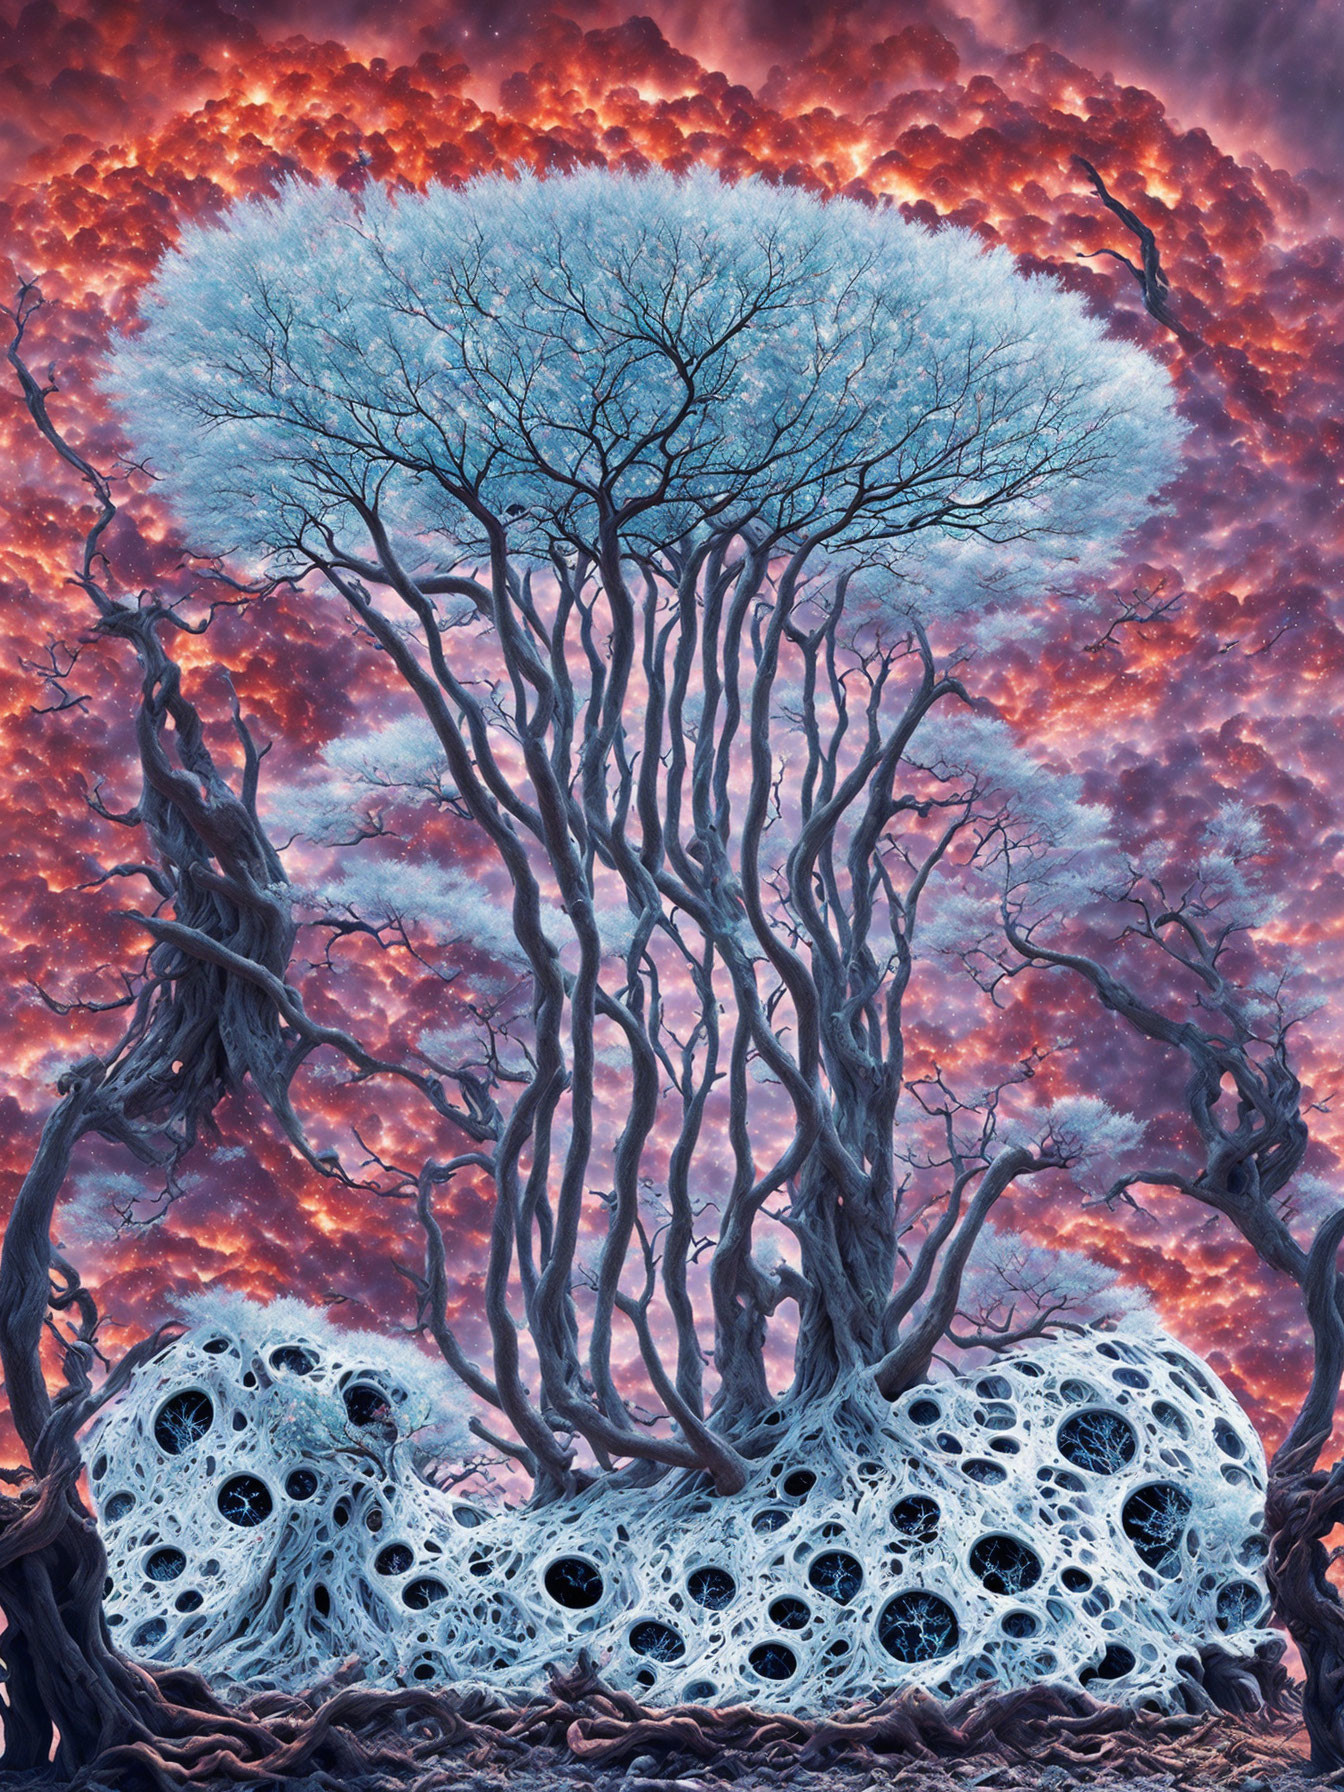 Apocalypse tree